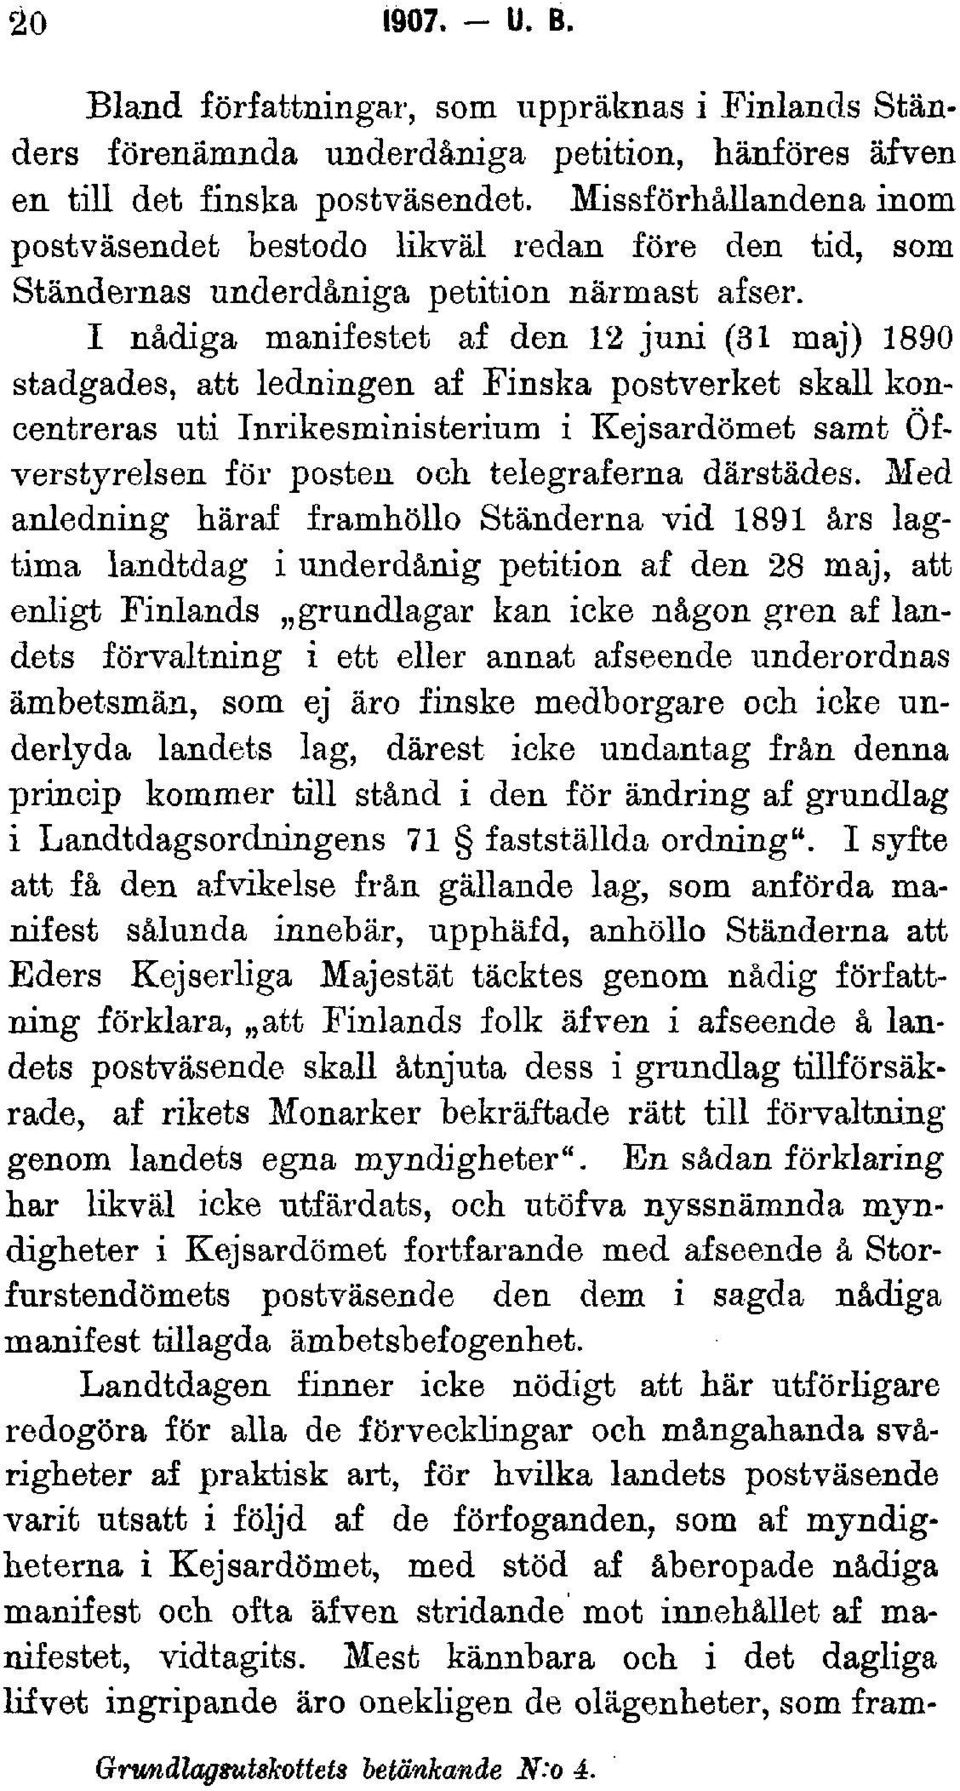 I nådiga manifestet af den 12 juni (31 maj) 1890 stadgades, att ledningen af Finska postverket skall koncentreras uti Inrikesministerium i Kejsardömet samt Öfverstyrelsen för posten och telegraferna